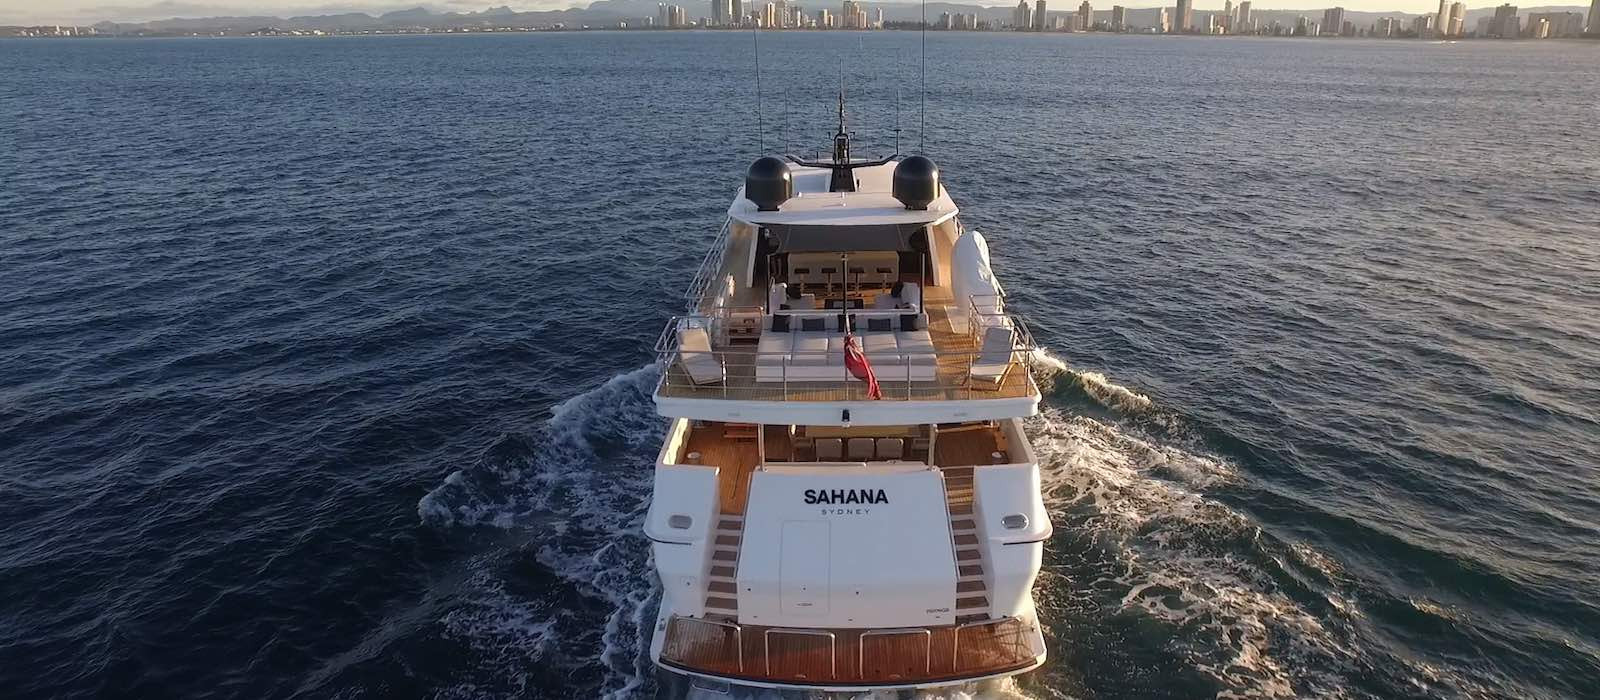 Sahana luxury boat hire profile image